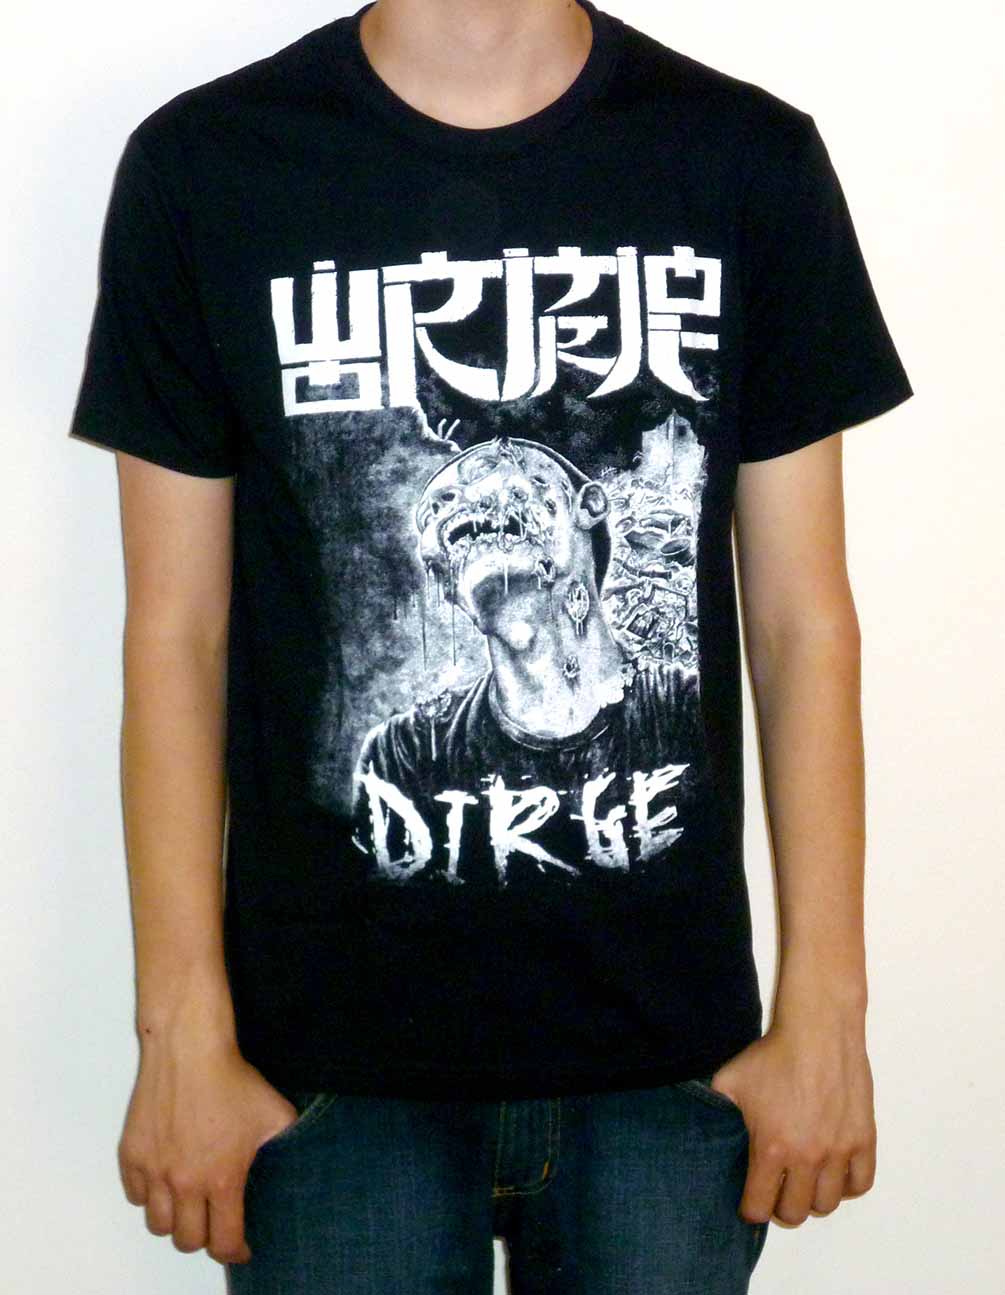 Wormrot "Dirge" T-shirt